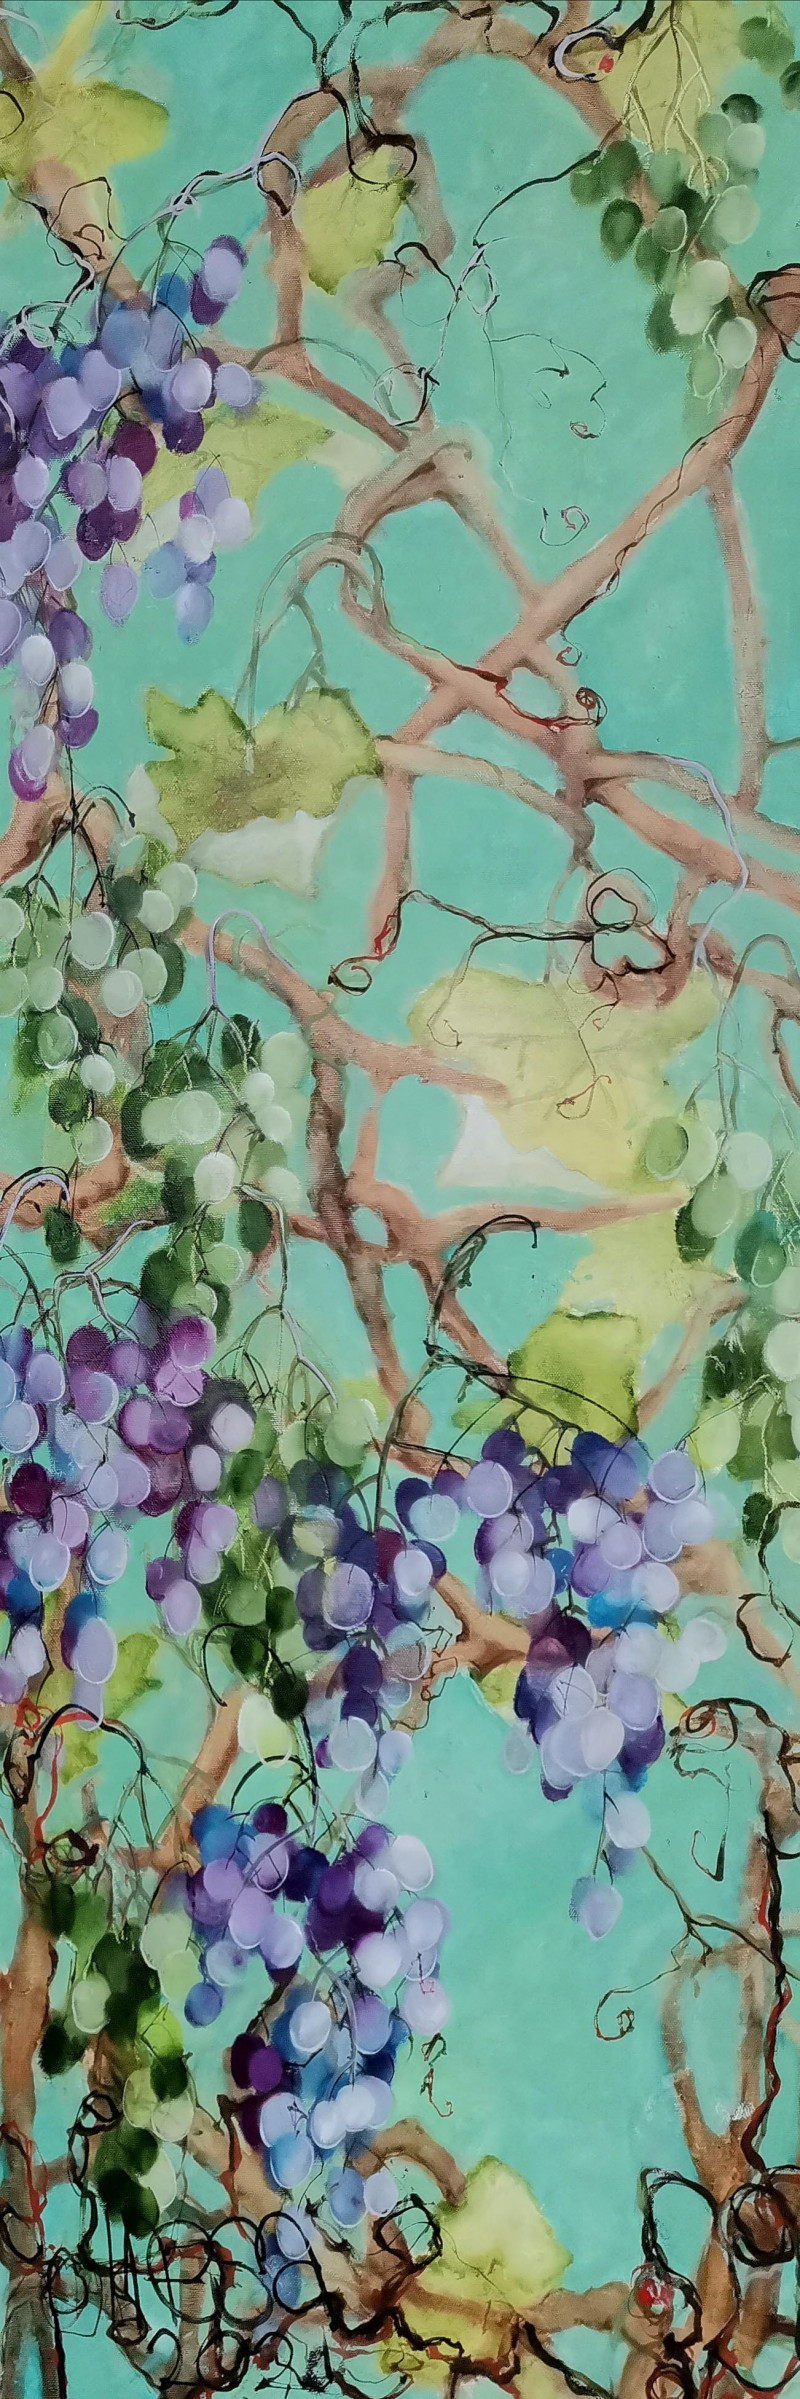 Inesa Škeliova tapytas paveikslas Vyno mėgėjams 6, Tapyba aliejumi , paveikslai internetu